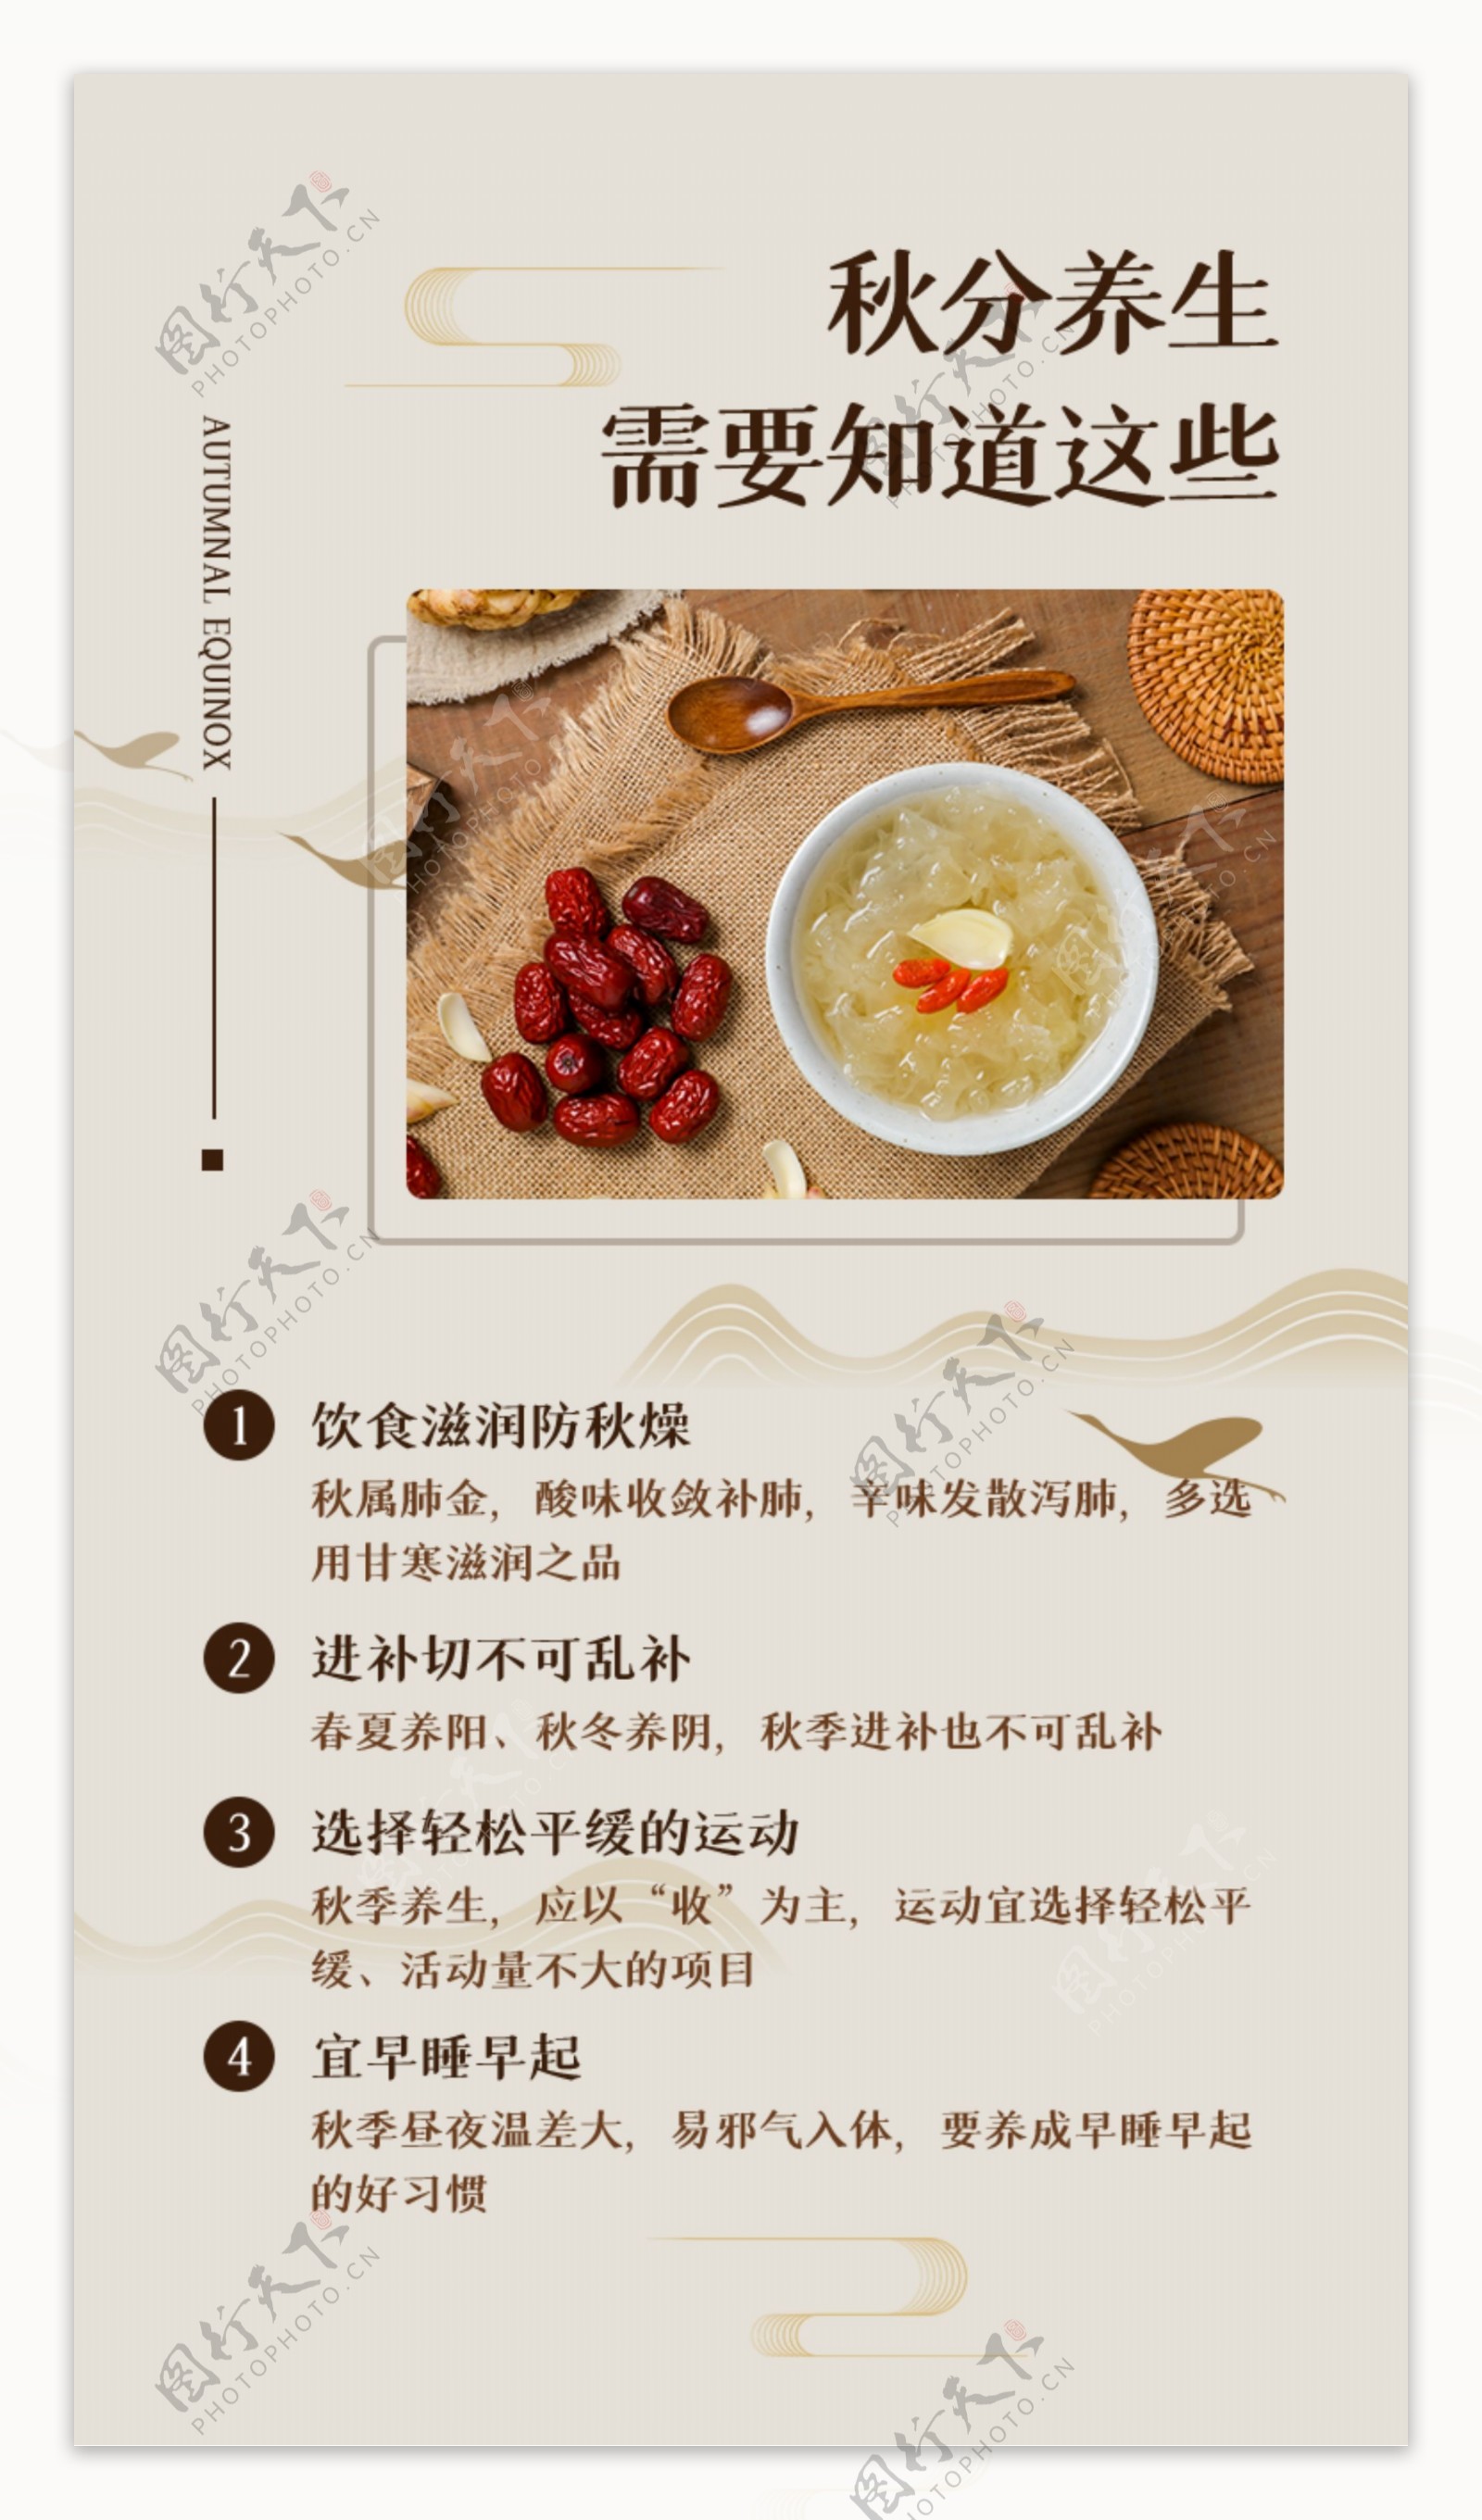 中国风秋分节气养生食疗指南H5